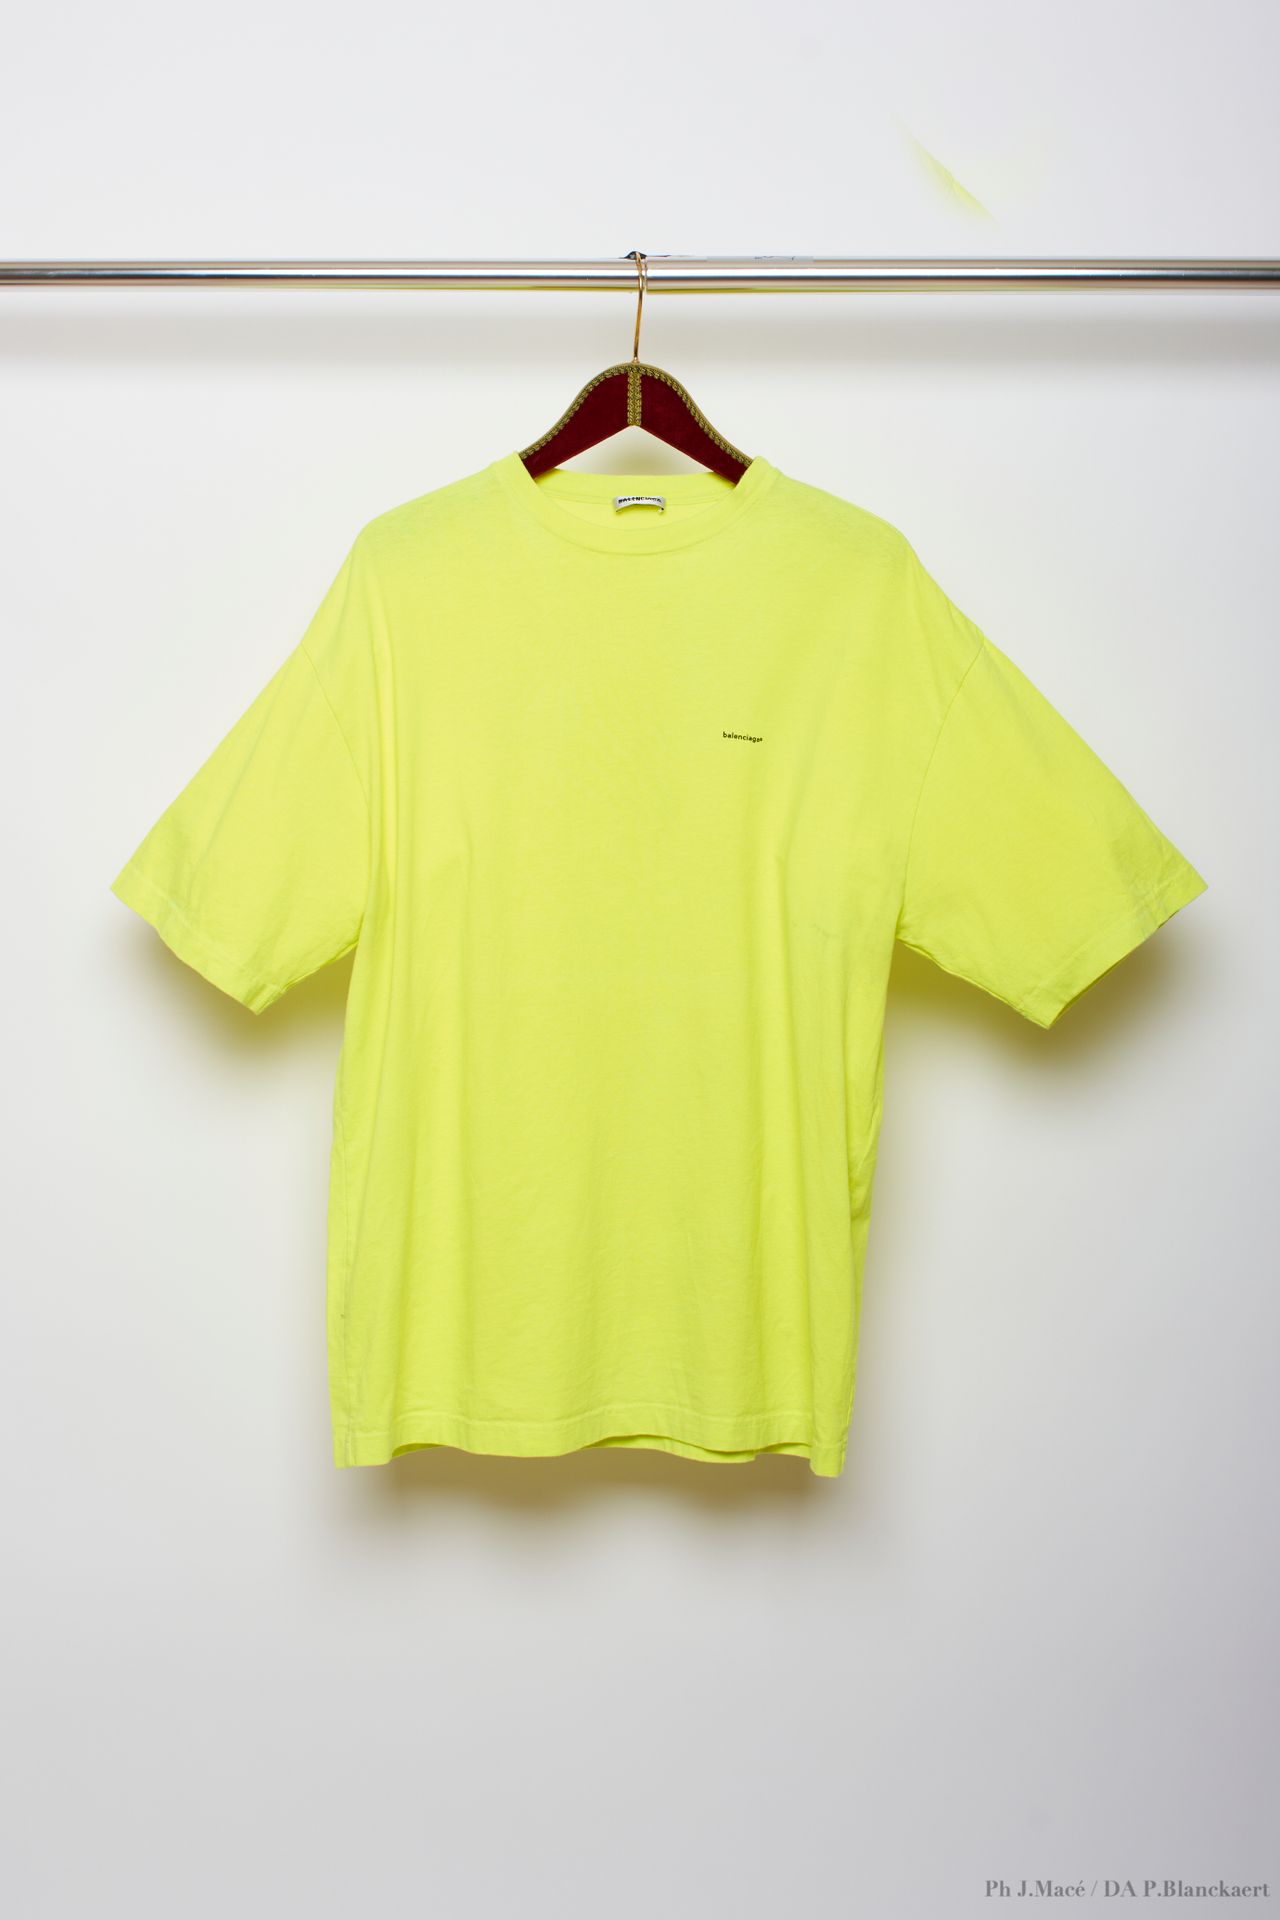 BALENCIAGA - 2018 T-SHIRT
in jersey di cotone giallo fluorescente
T. XS
Vendita &hellip;